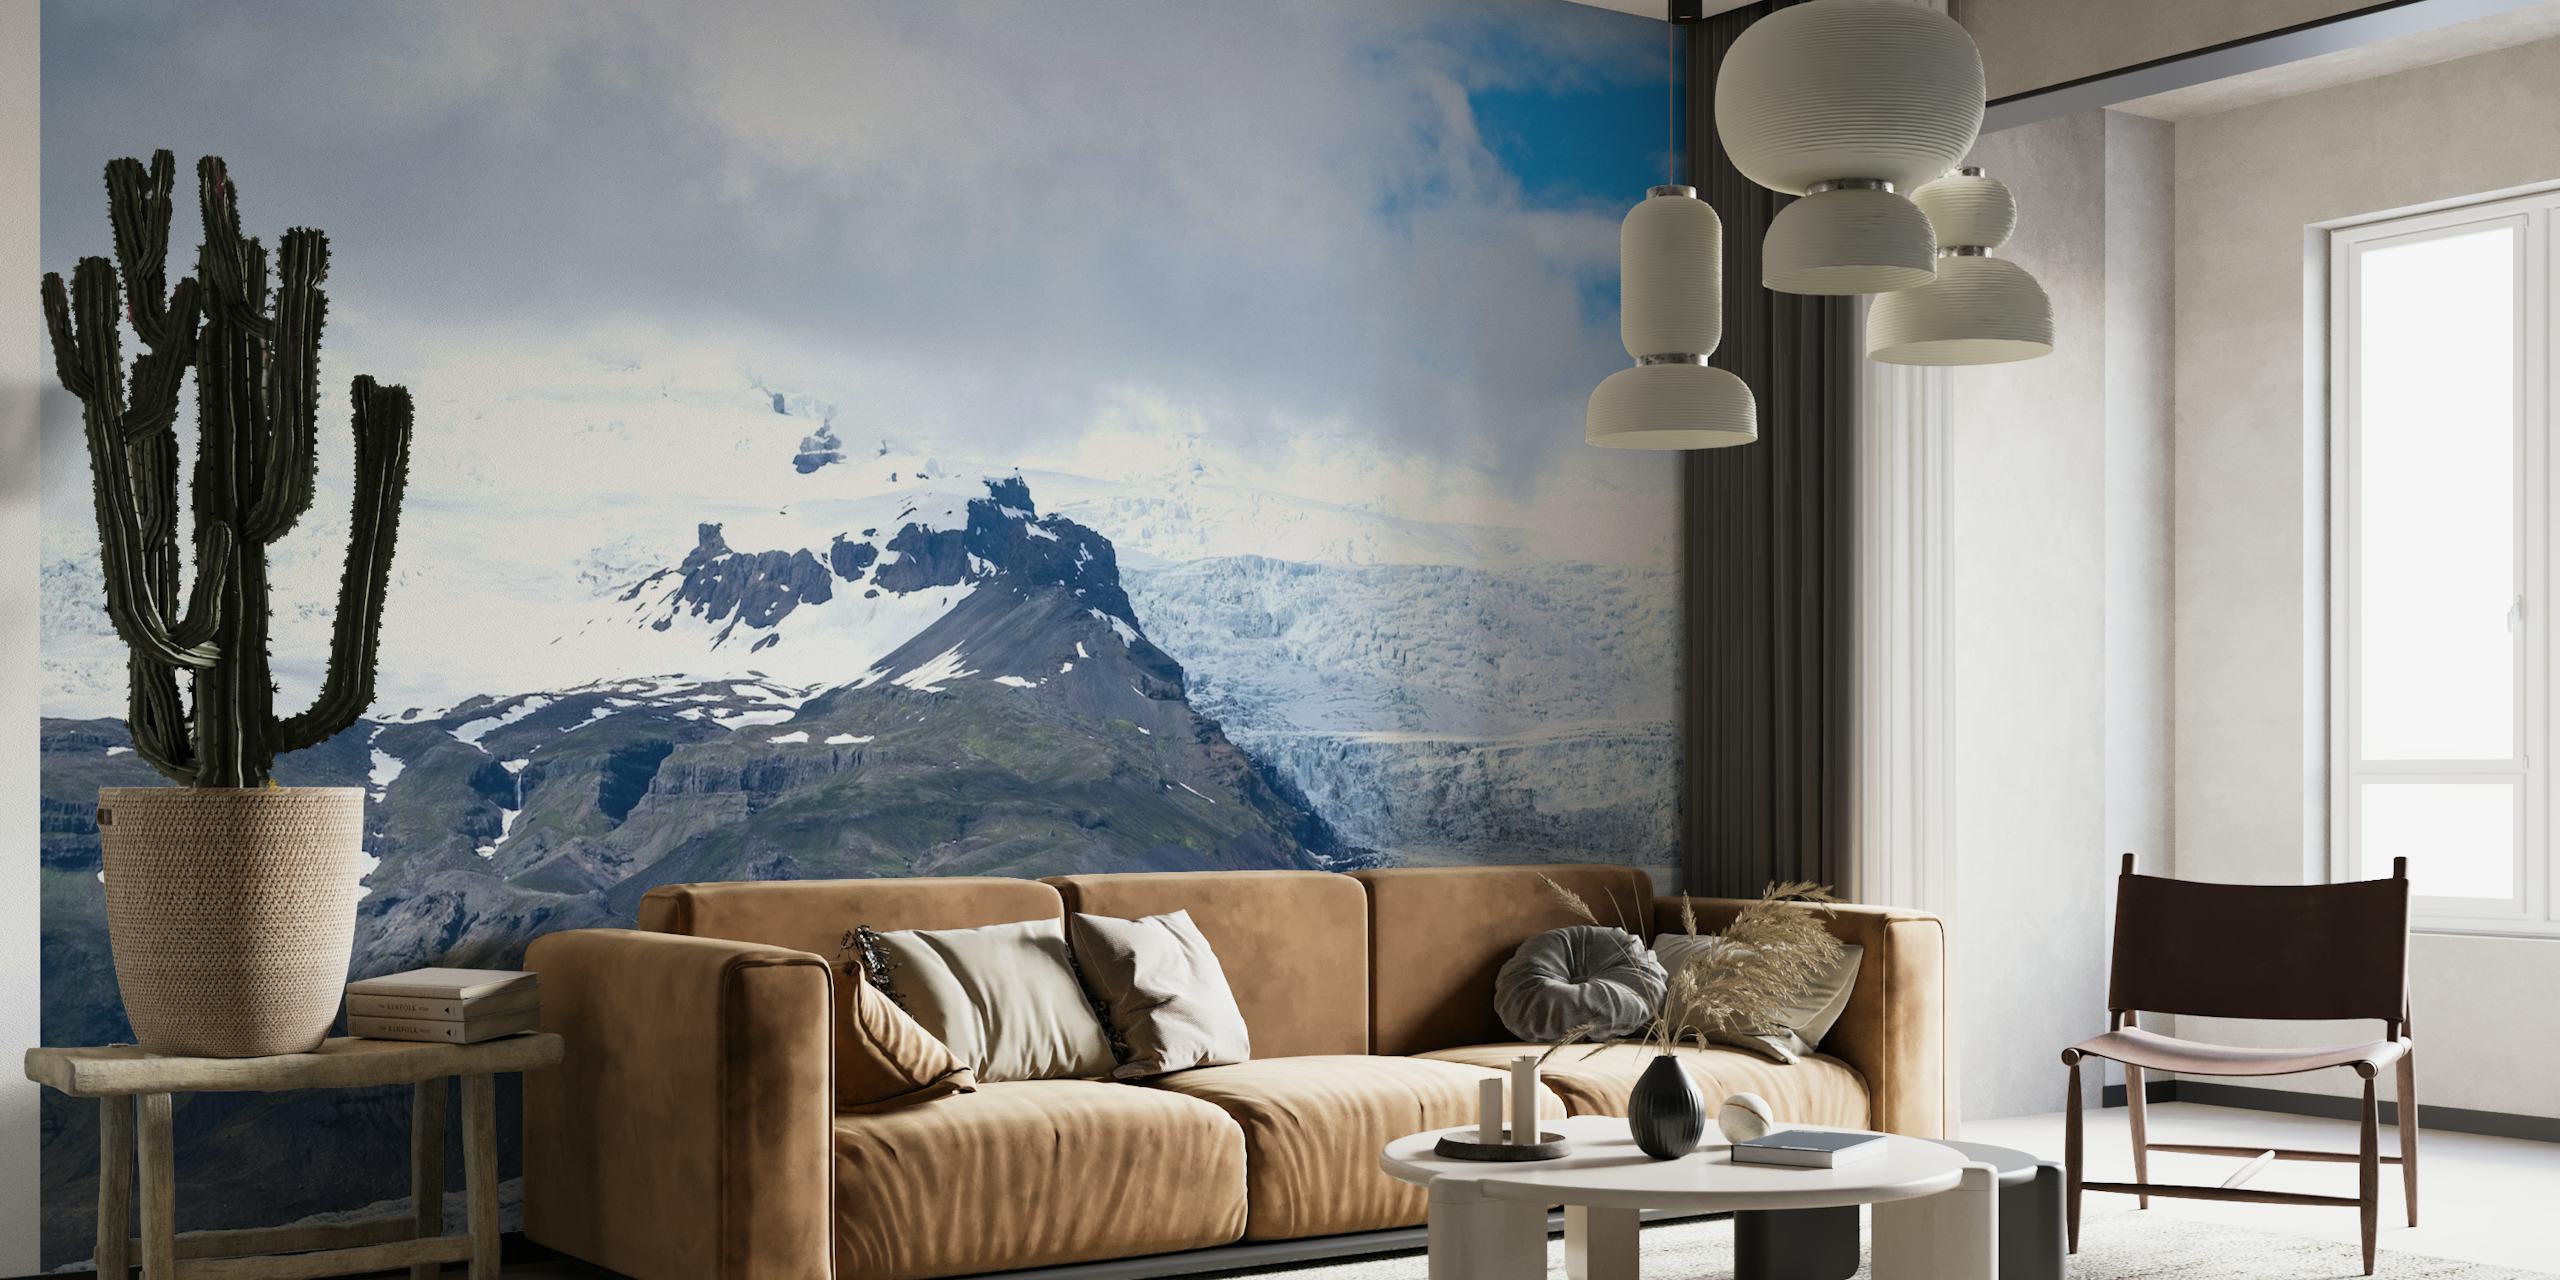 Breiðamerkurjökull-Gletscher-Wandbild mit blauen Eistönen und Berggipfeln